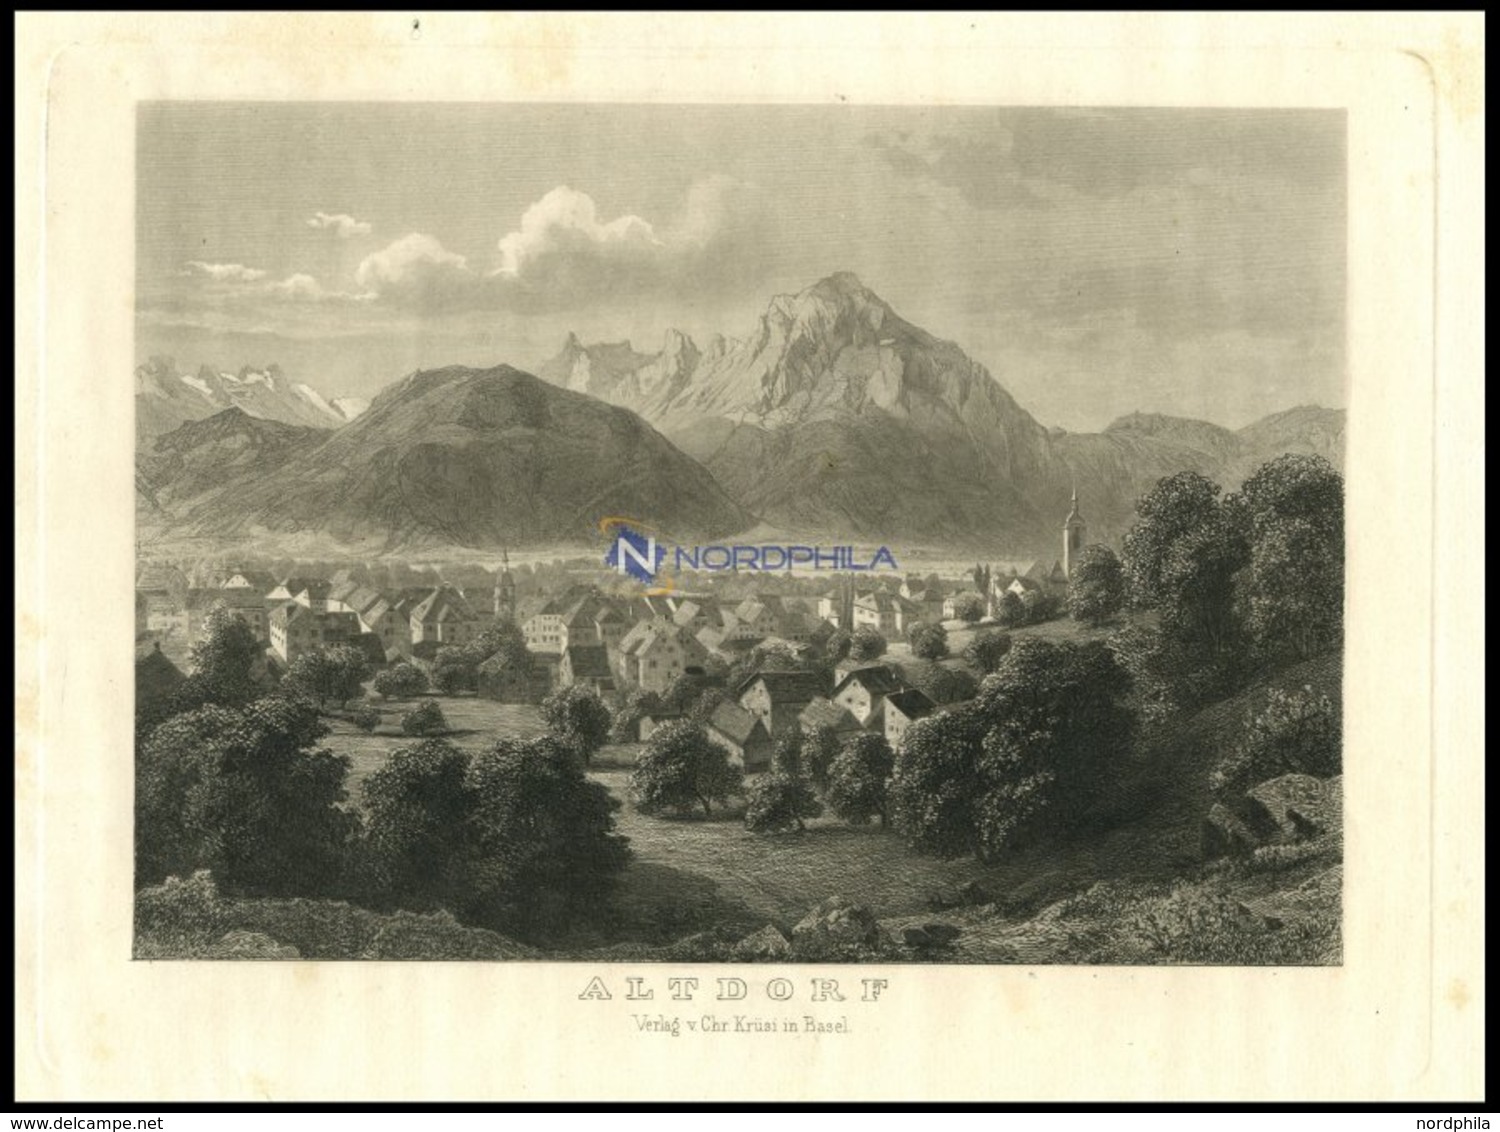 ALTDORF, Gesamtansicht, Stahlstich Um 1840 - Litografía